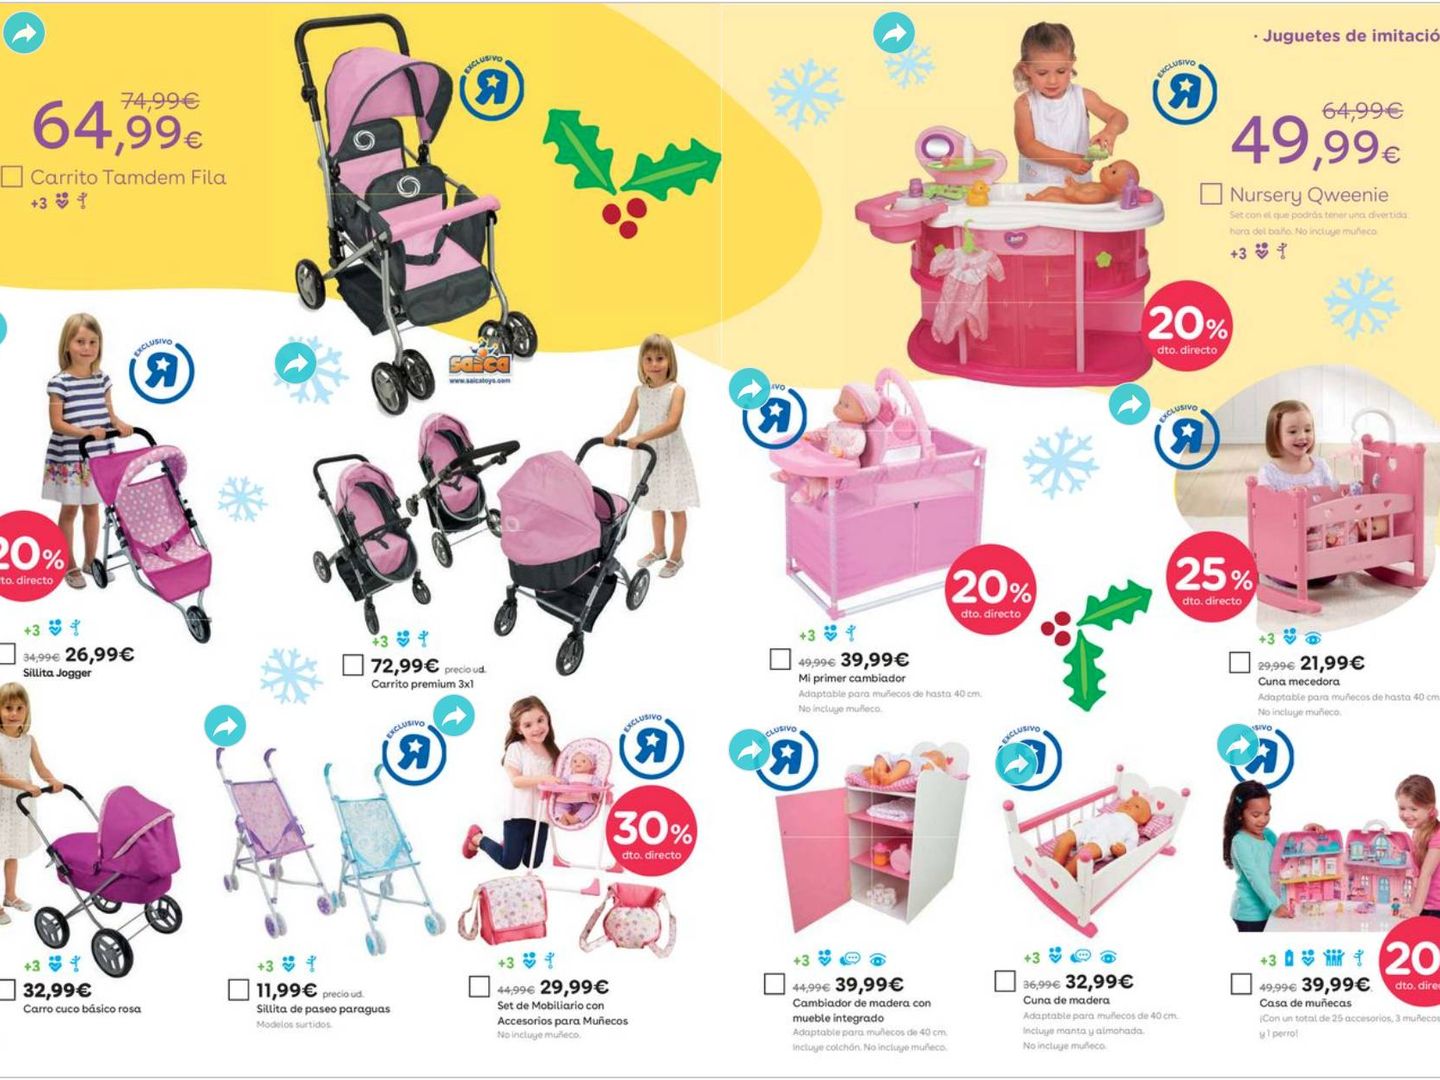 Catálogo del año 2020 de Toys 'R' Us.